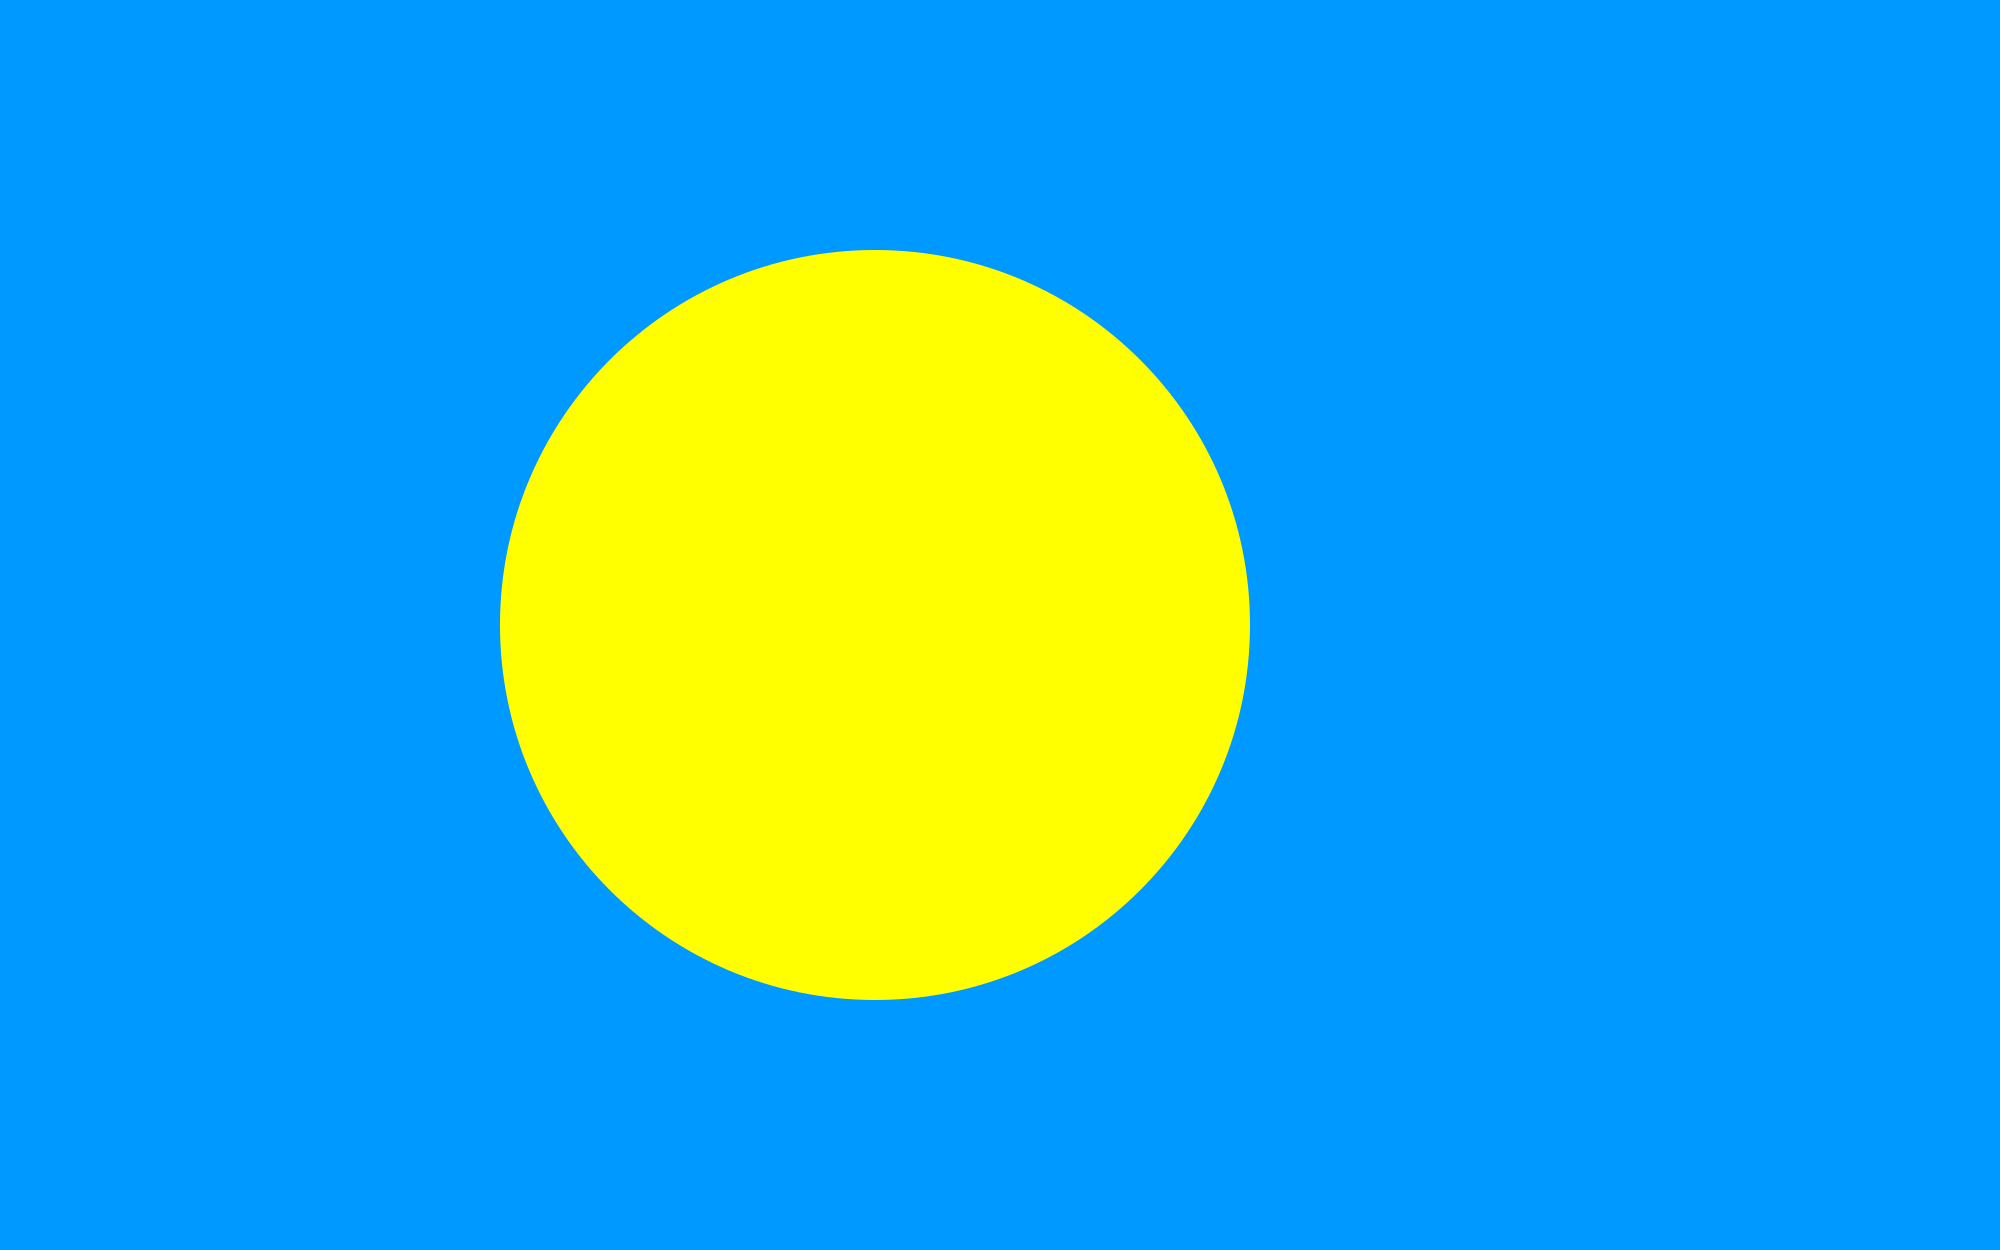 Blue and Yellow Circle Logo - Flag of Palau